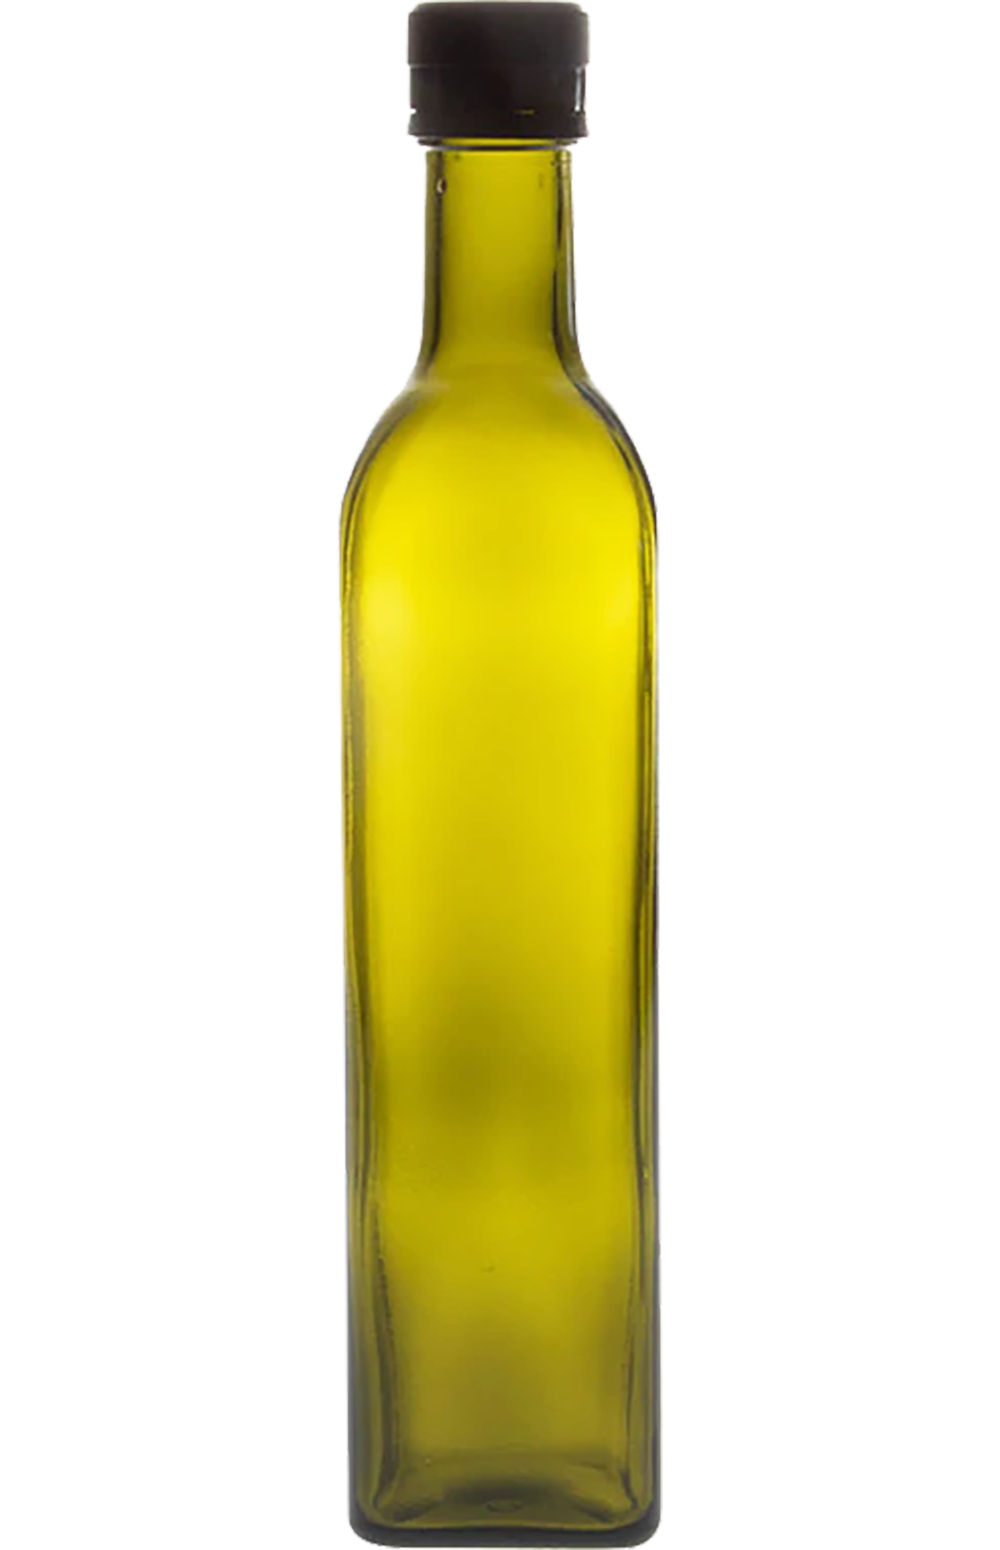 NARA olive oil